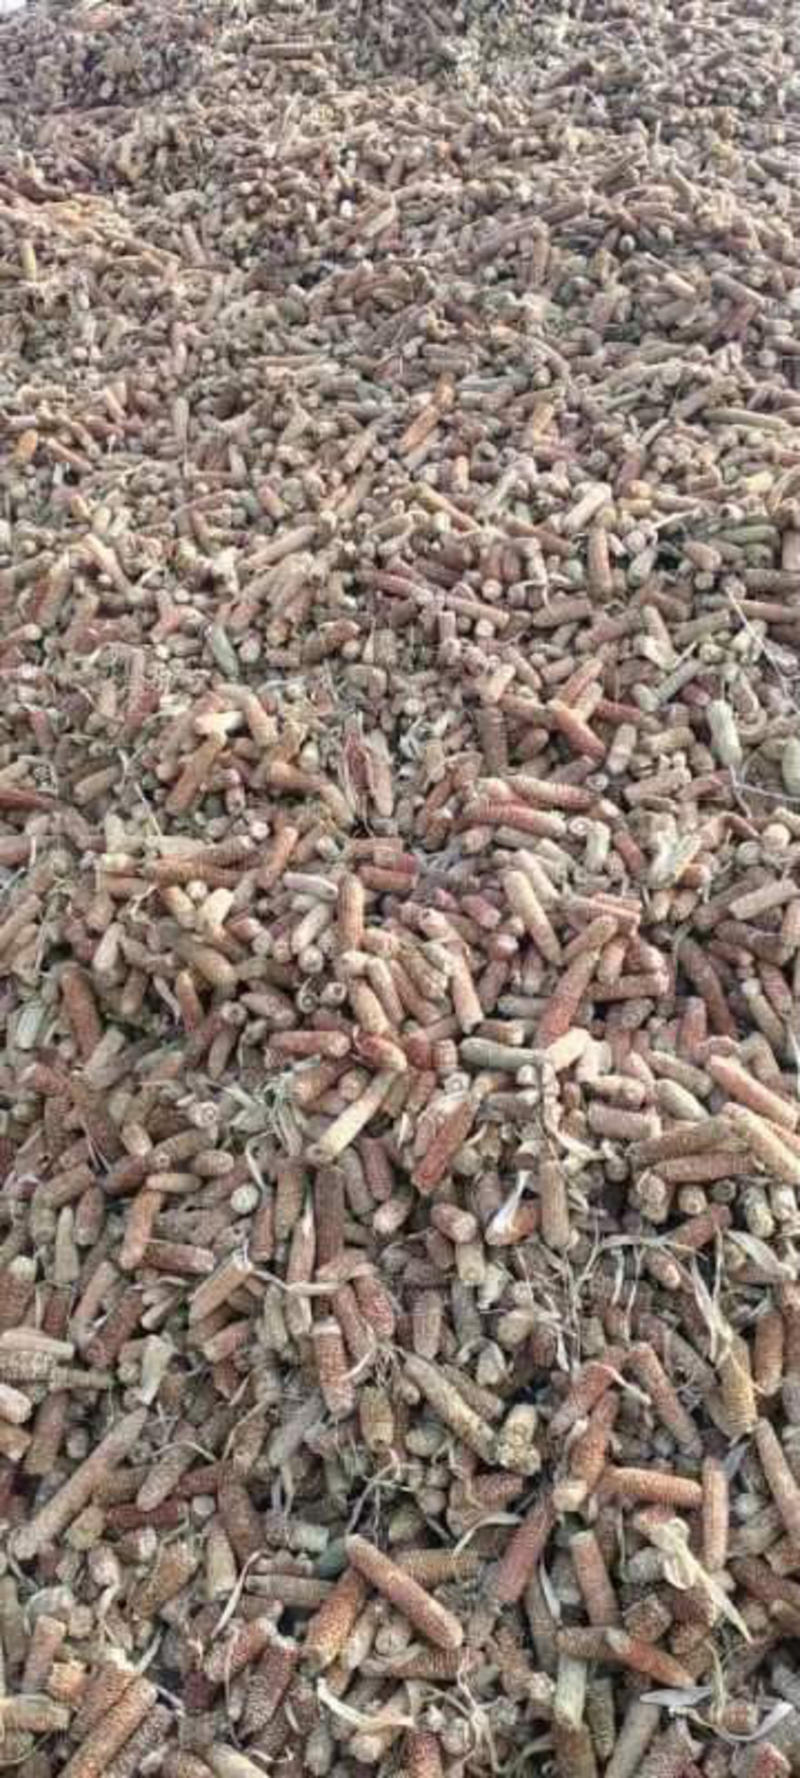 山东大量玉米芯玉米芯颗粒出售一手货源产地实发